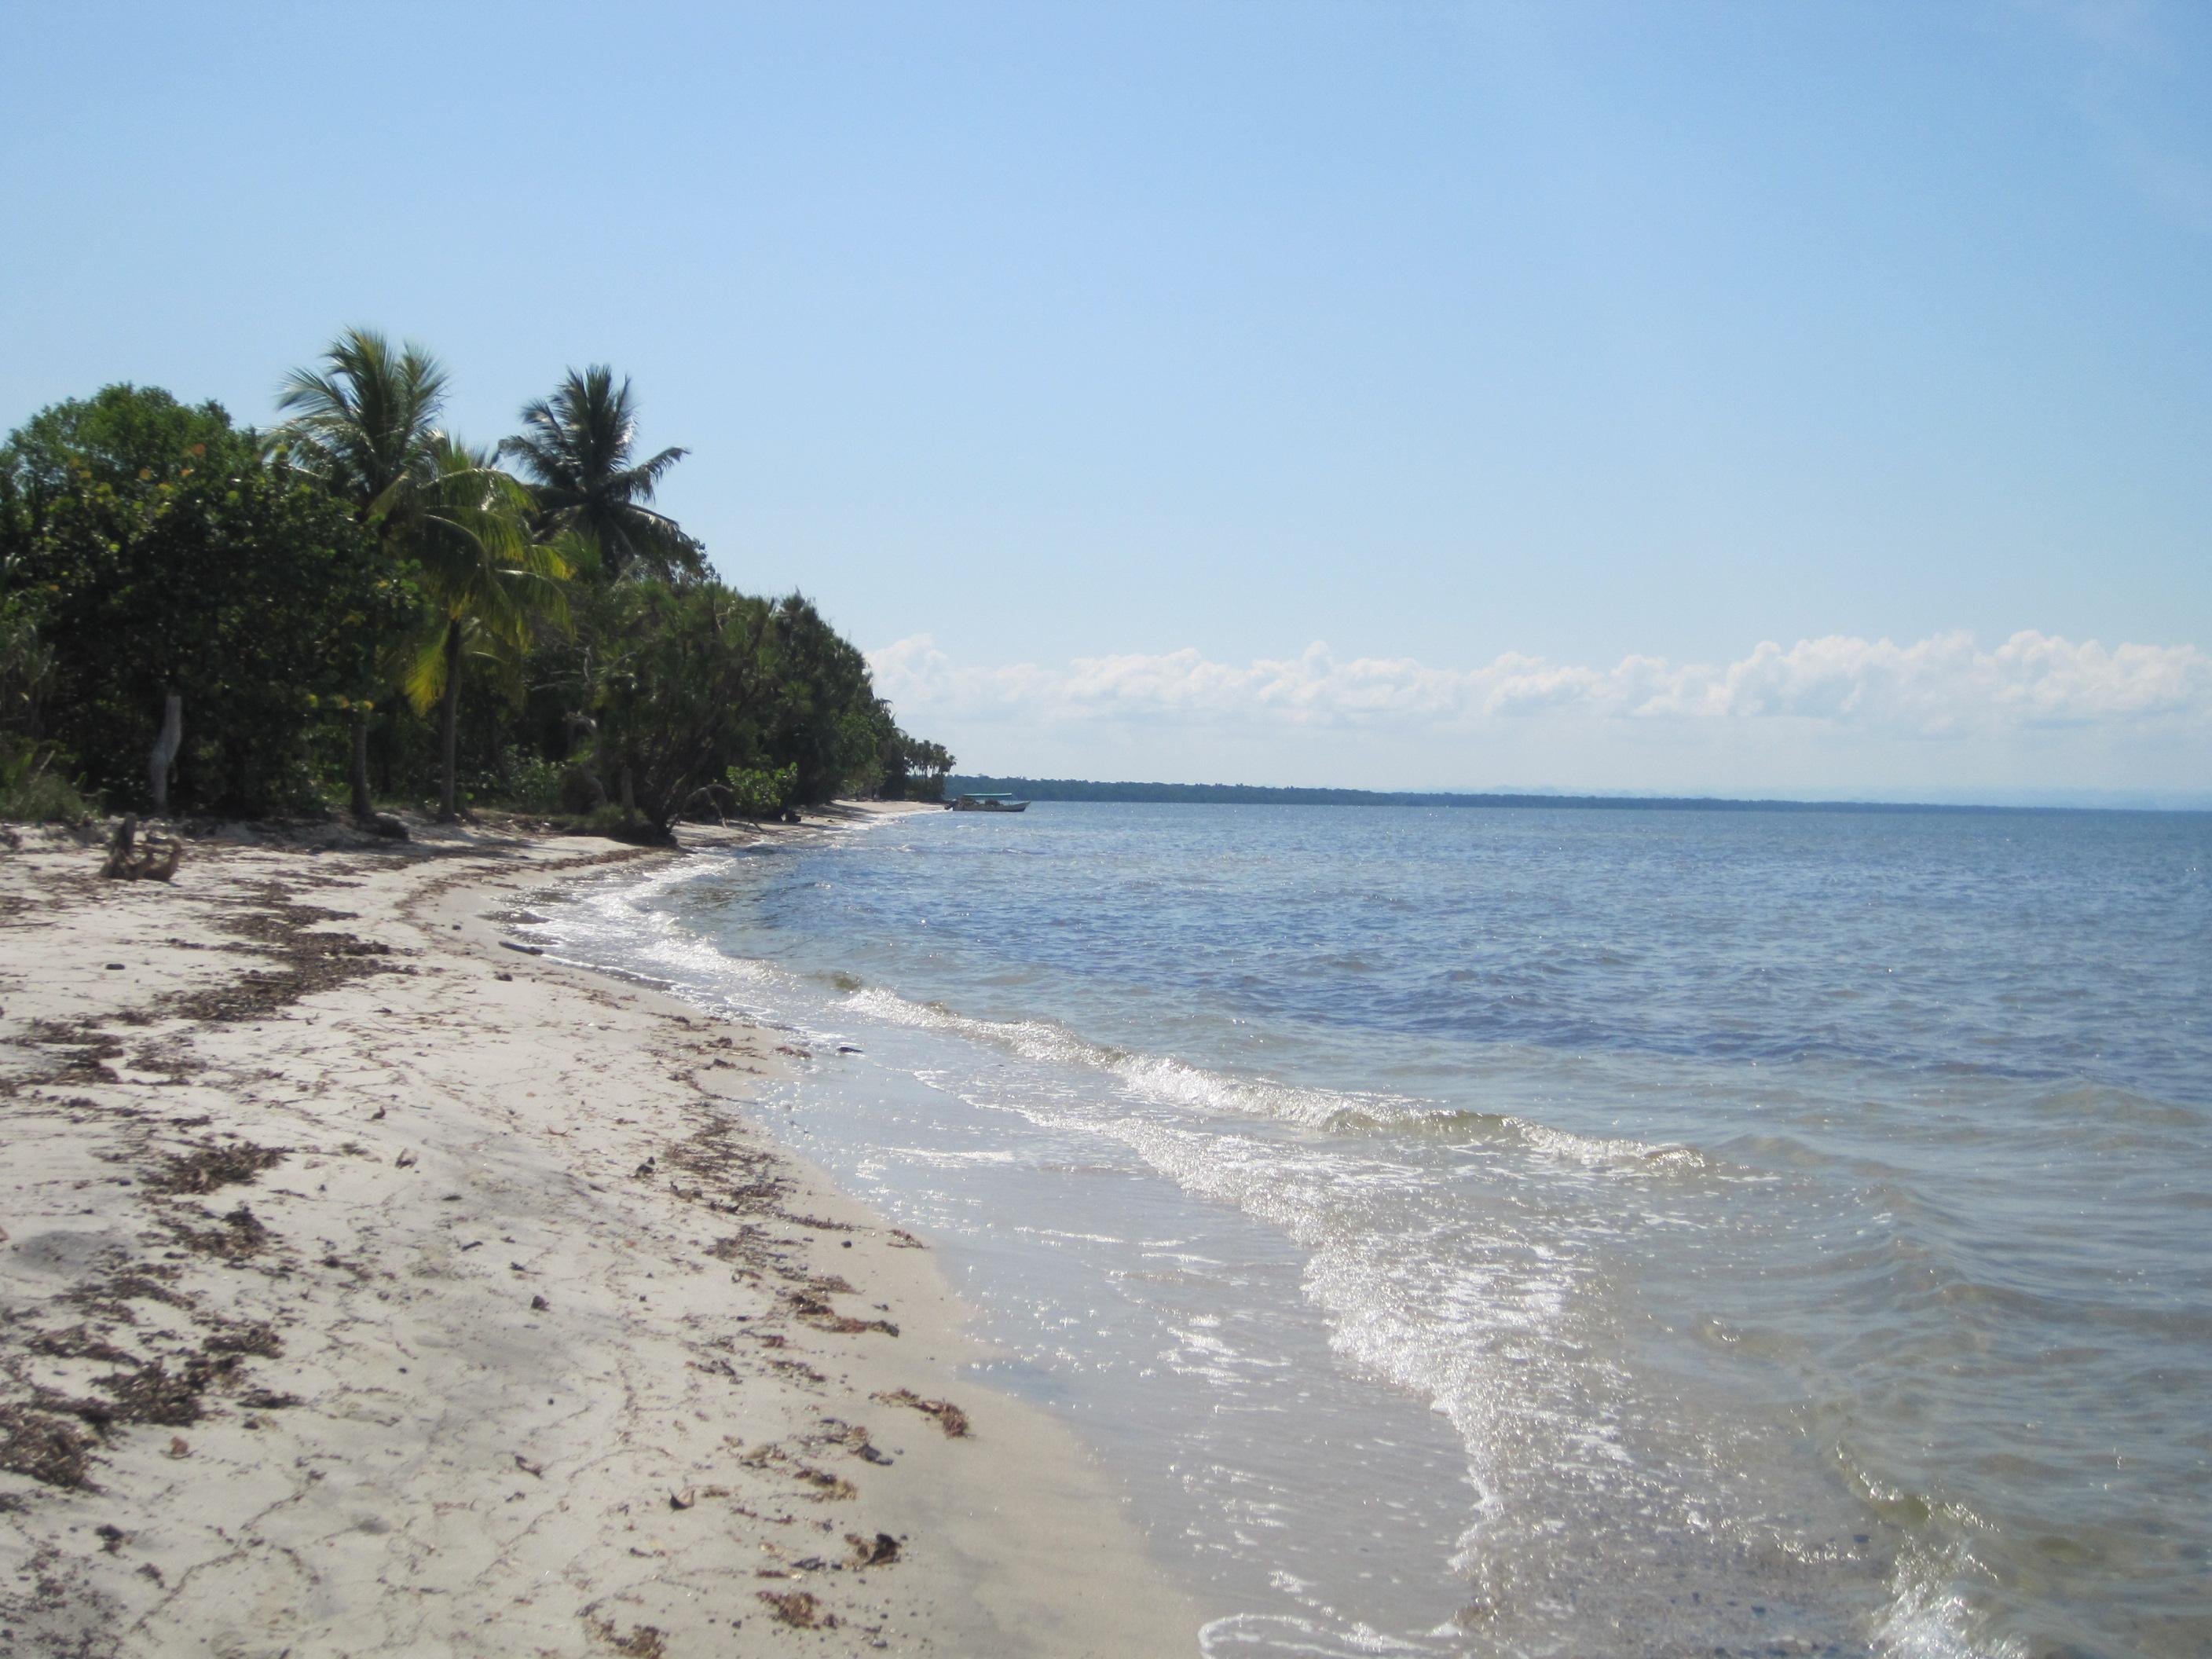 La playa de arena blanca que existe en Guatemala